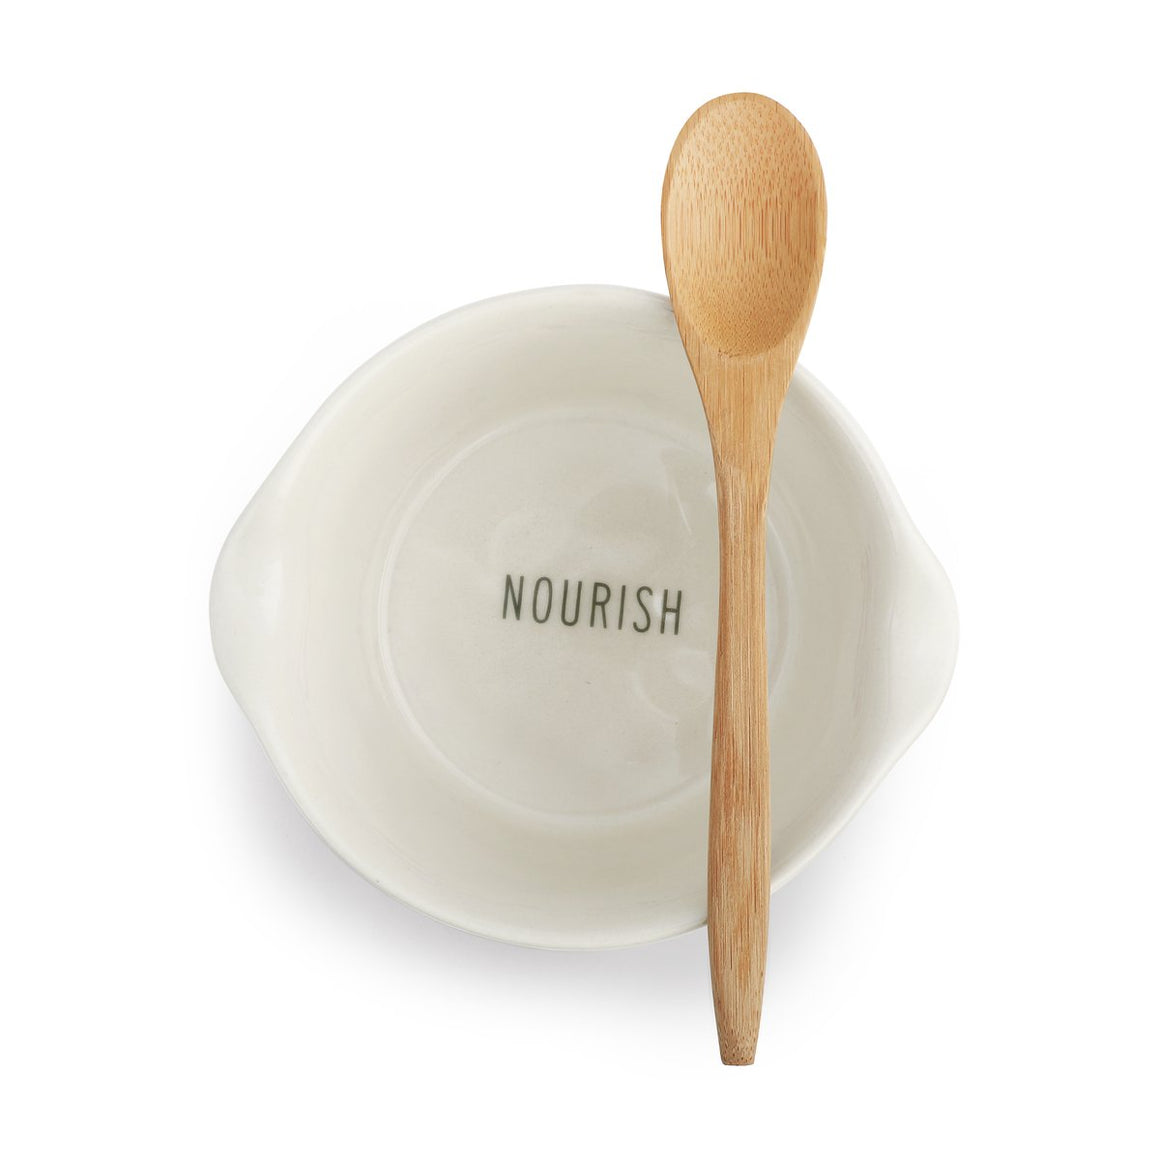 Appetizer Bowl w/Spoon - Nourish